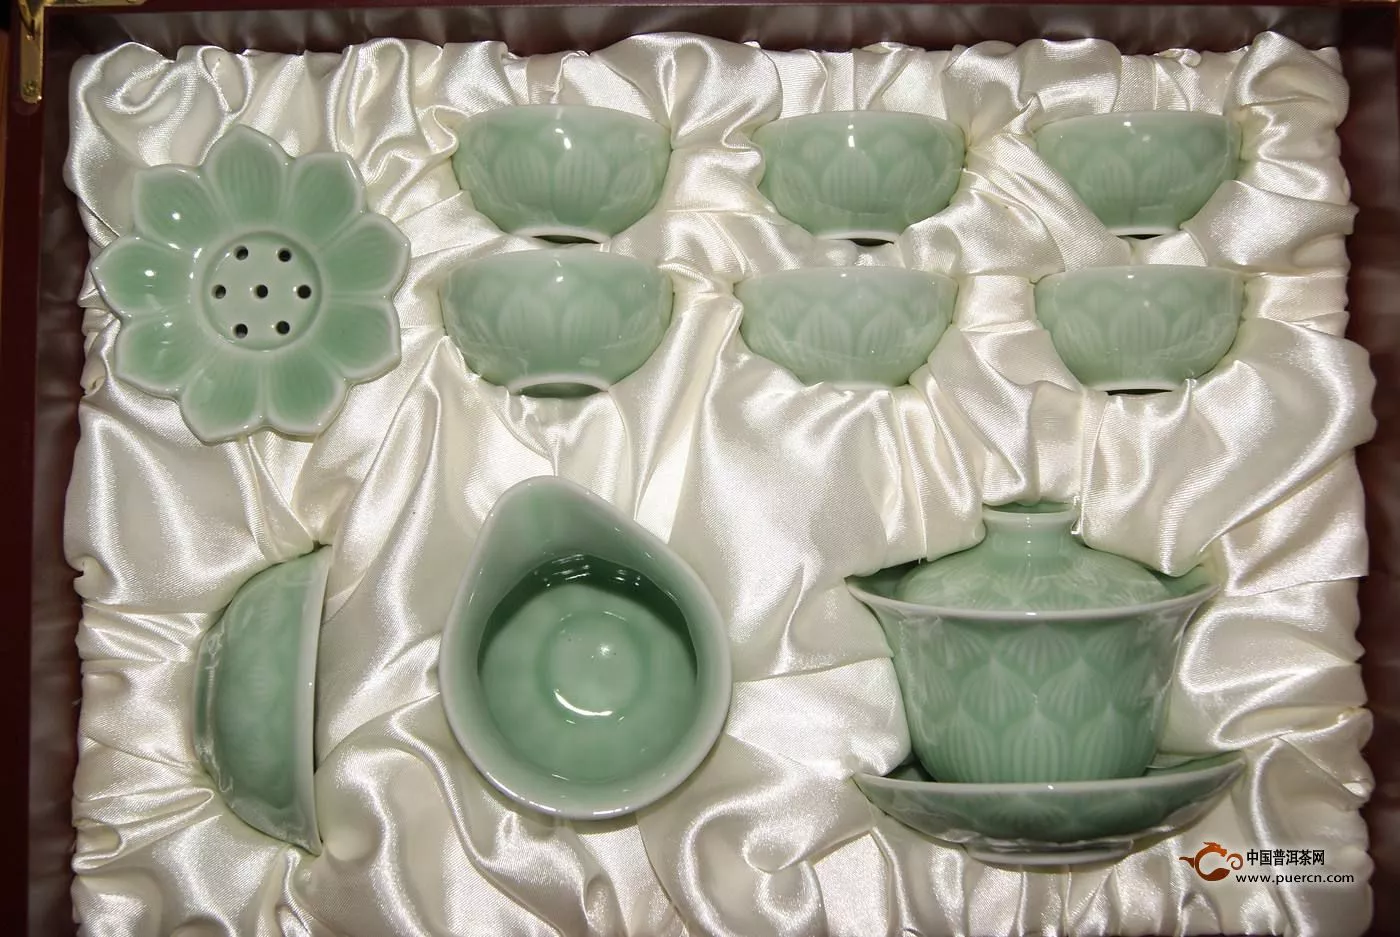 青瓷茶具的制作工艺